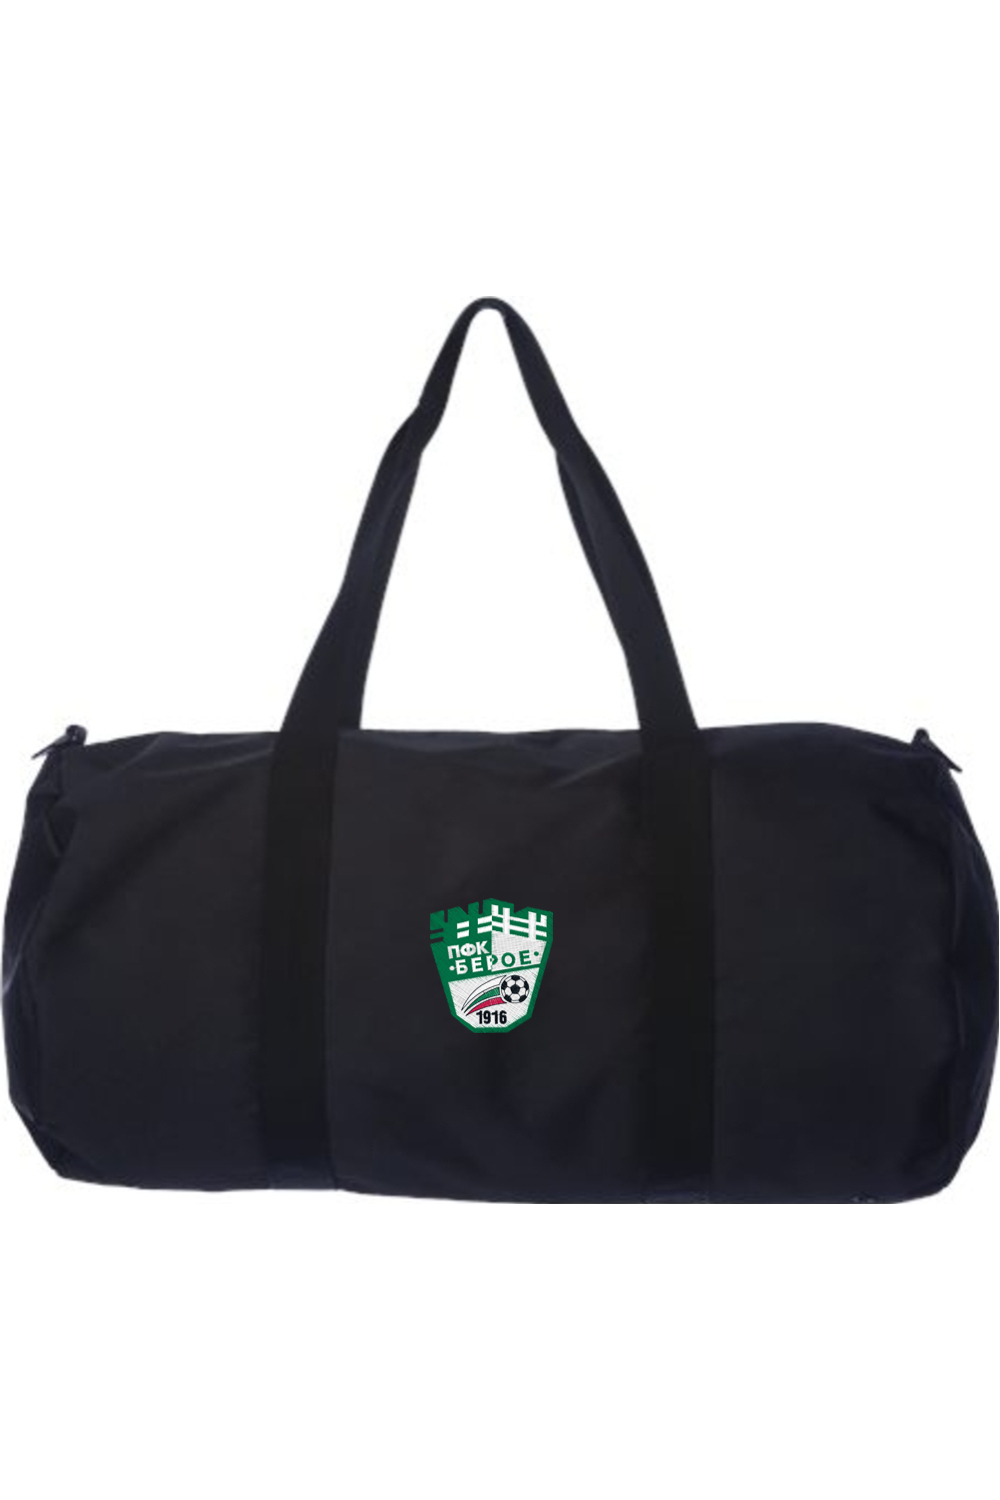 PFC Beroe Duffel Bag